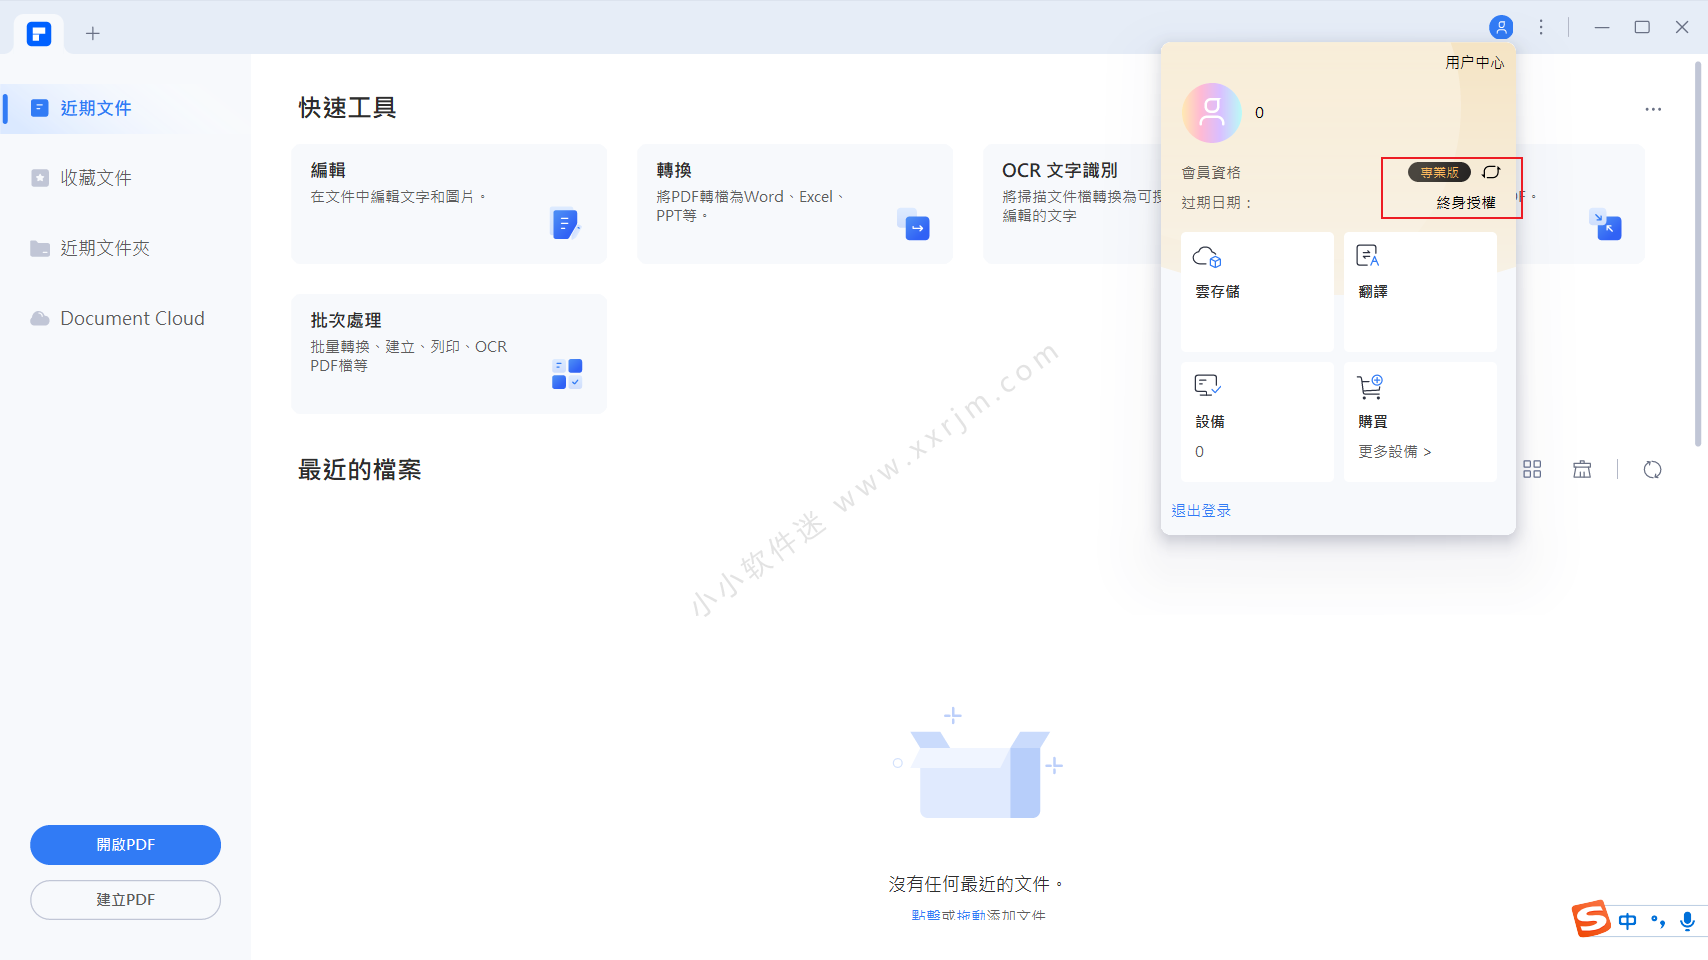 万兴PDF专业版9.0.12.1830中文破解版含OCR全功能